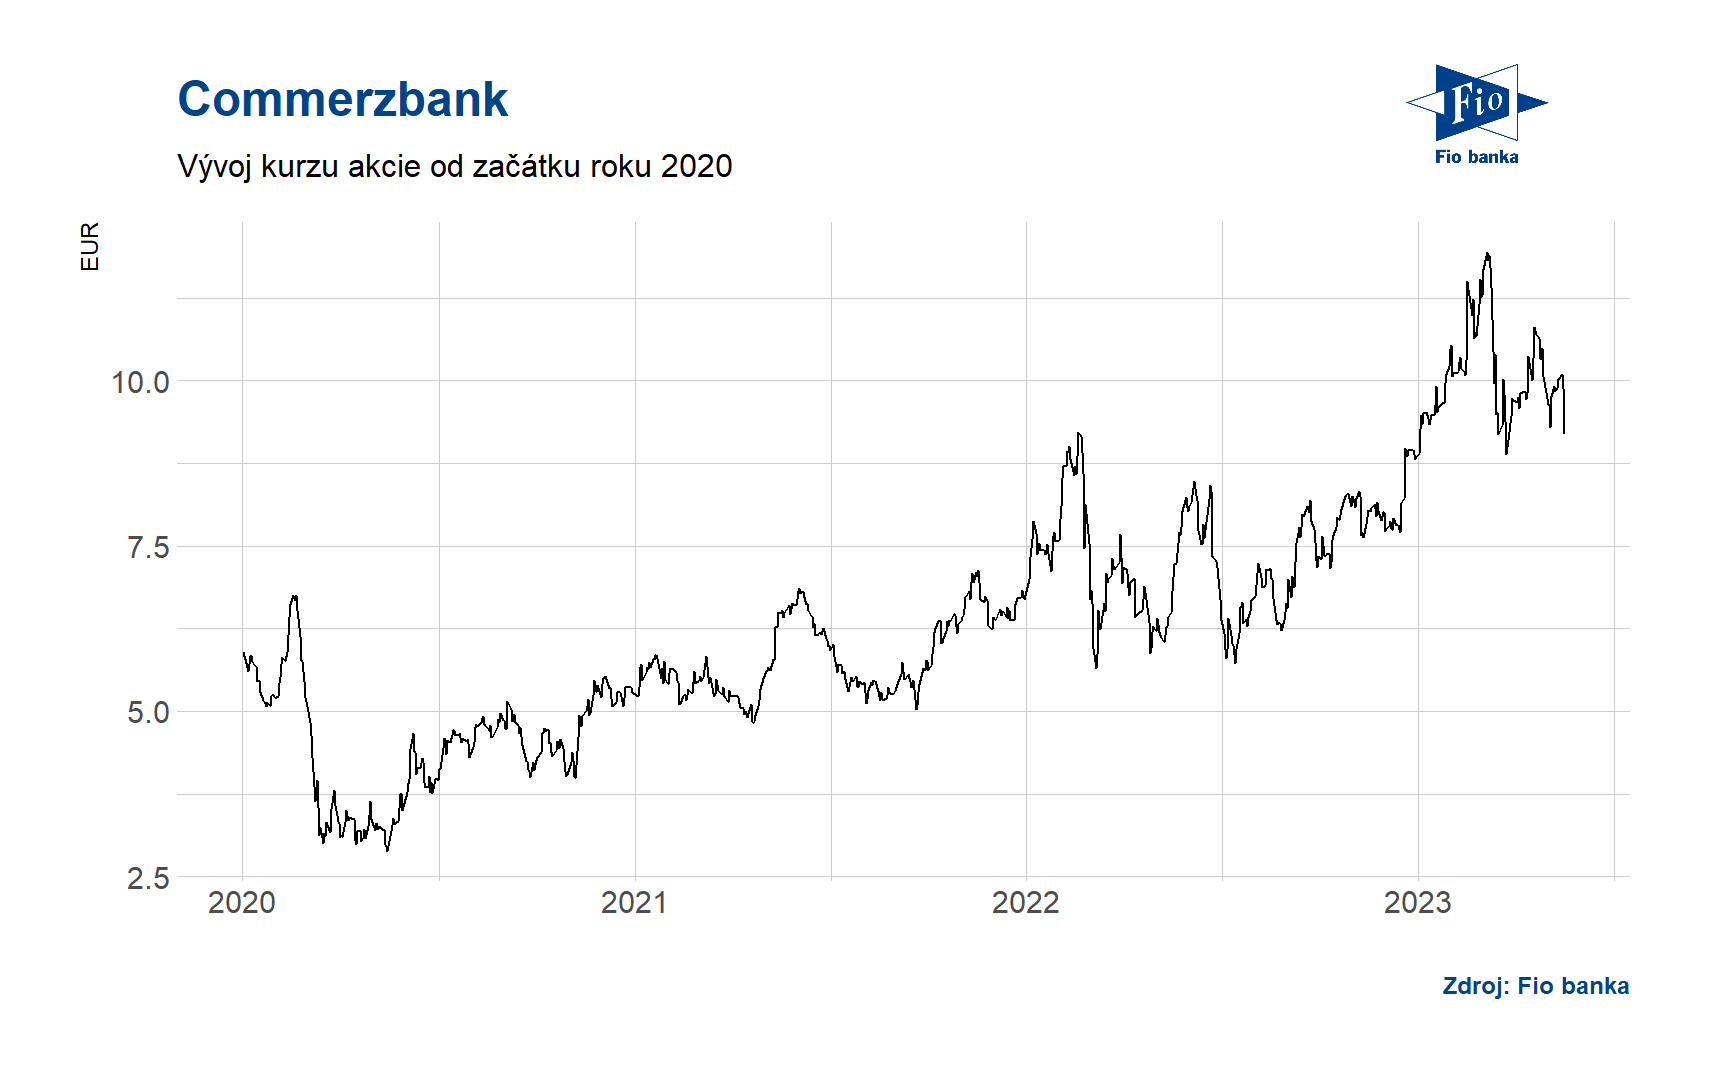 Vývoj ceny akcií Commerzbank